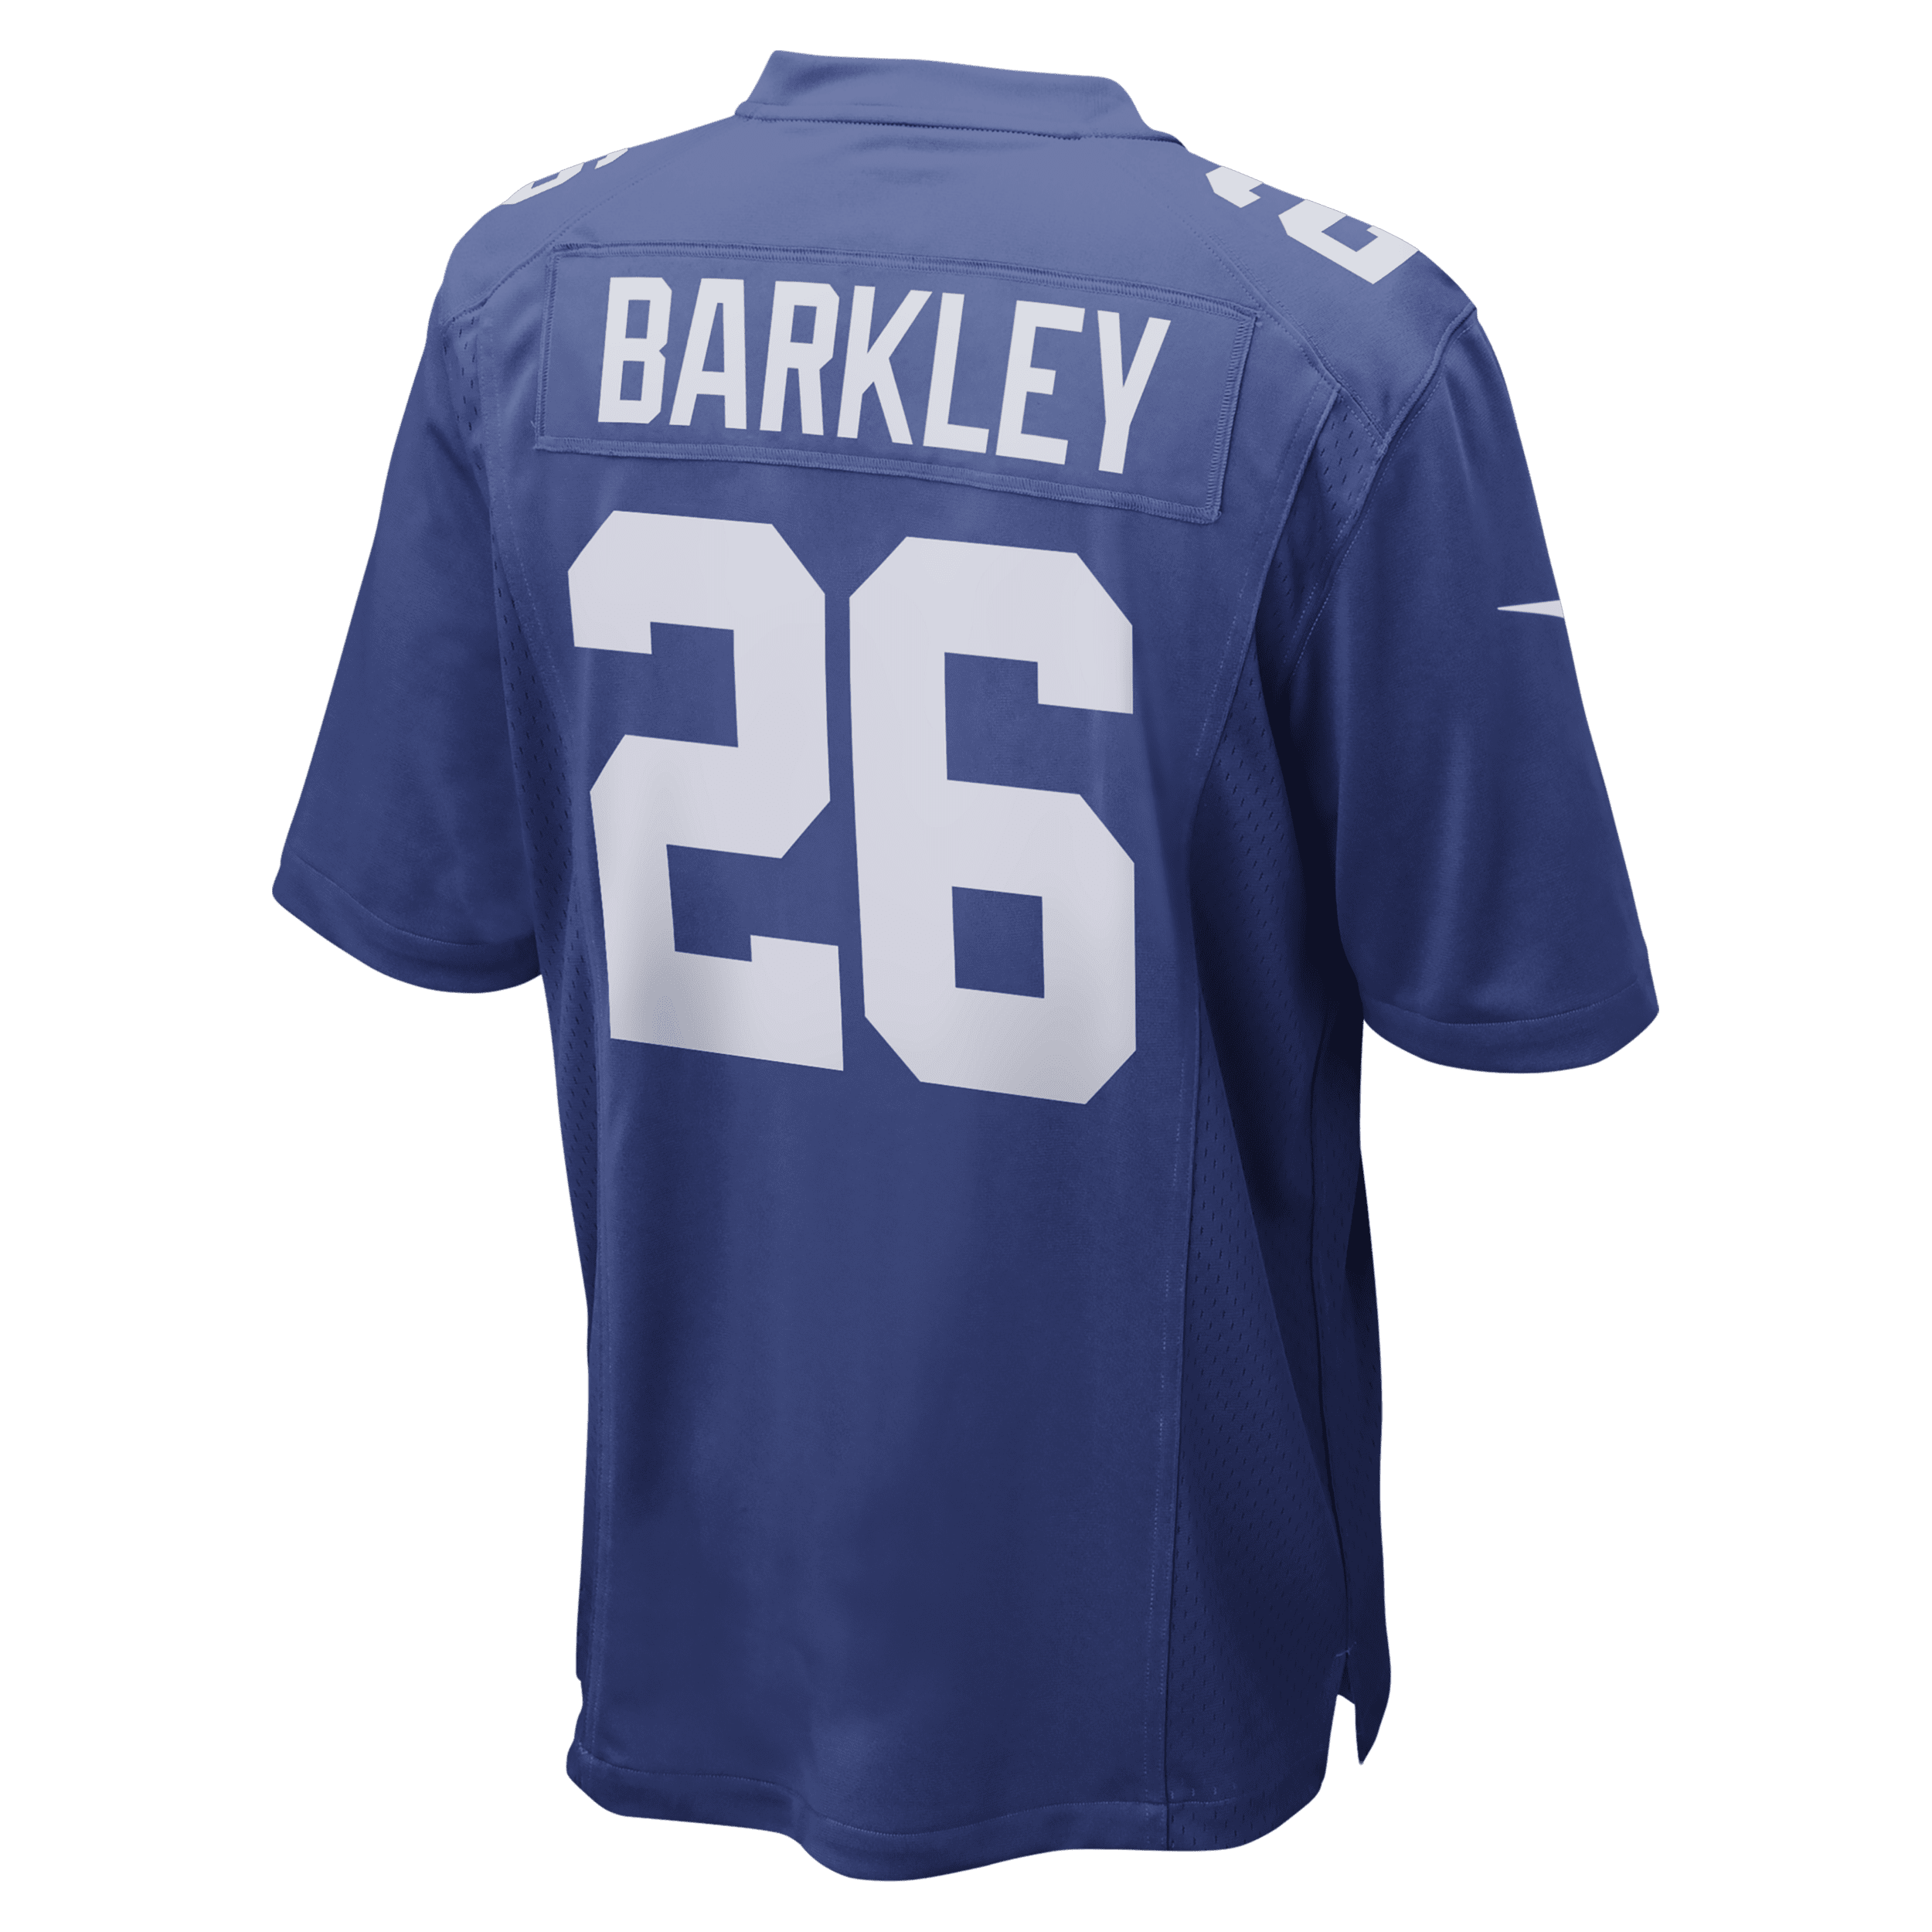 Nike NFL New York Giants (Saquon Barkley) American-football-wedstrijdjersey voor heren Blauw